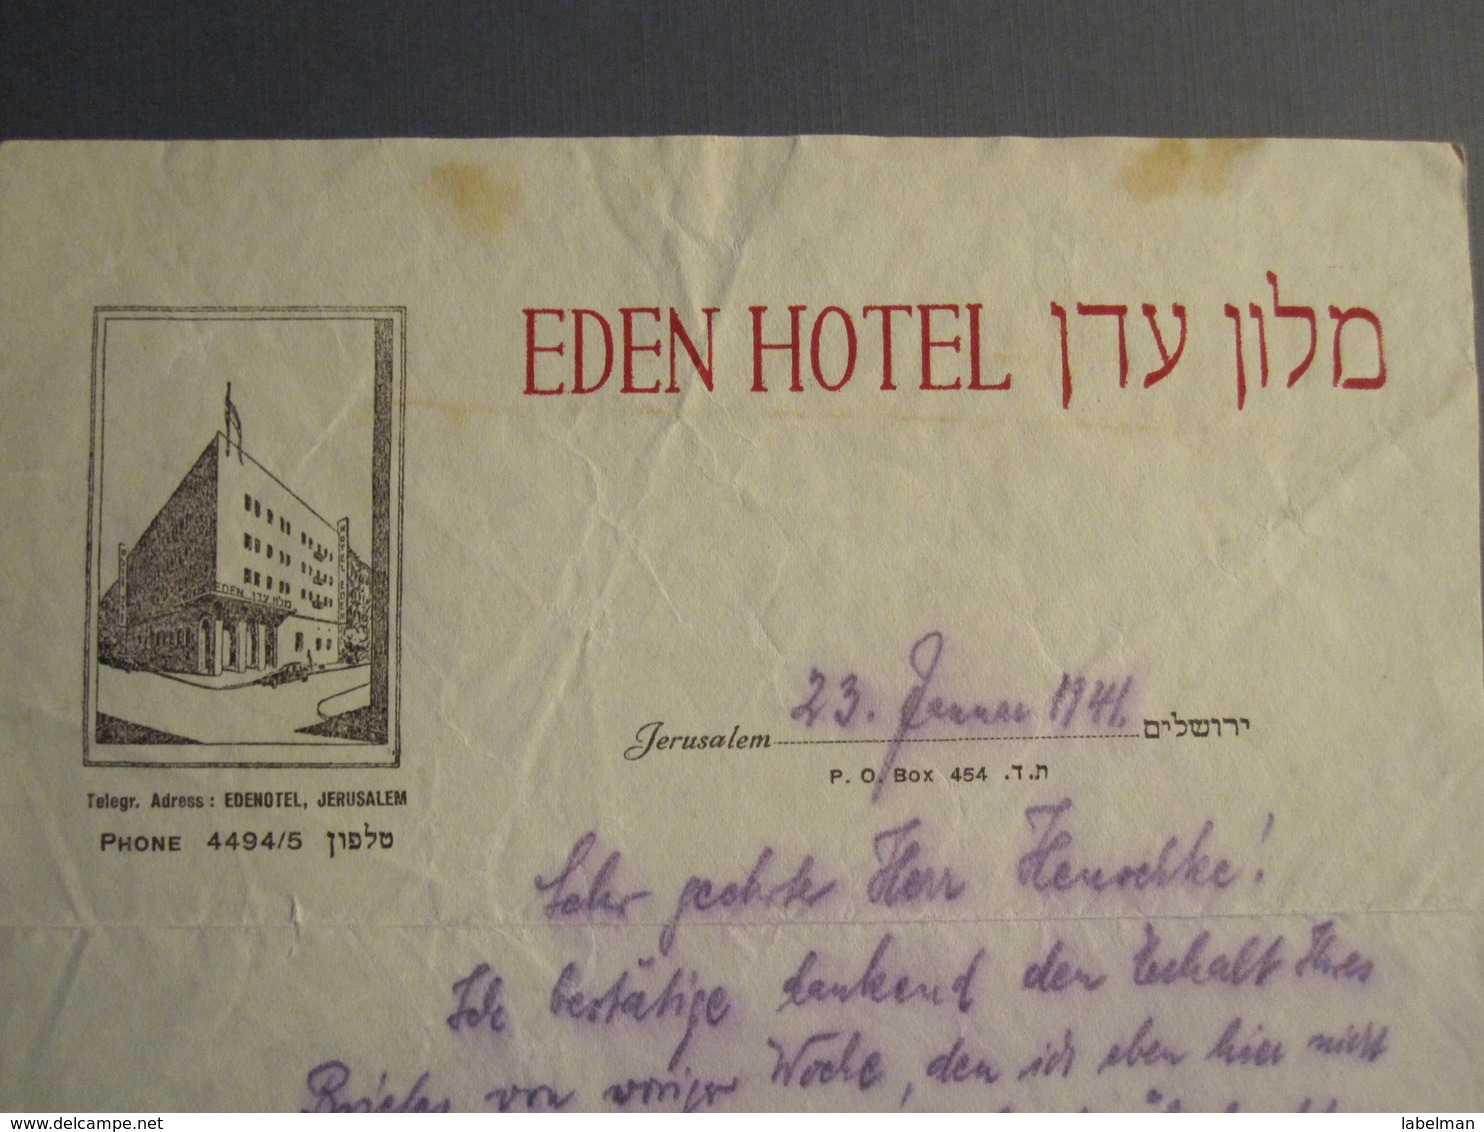 ISRAEL PALESTINE HOTEL EDEN JERUSALEM 1941 PAPER STATIONERY LETTER LOGO DESIGN ORIGINAL PHOTO - Manuscripts